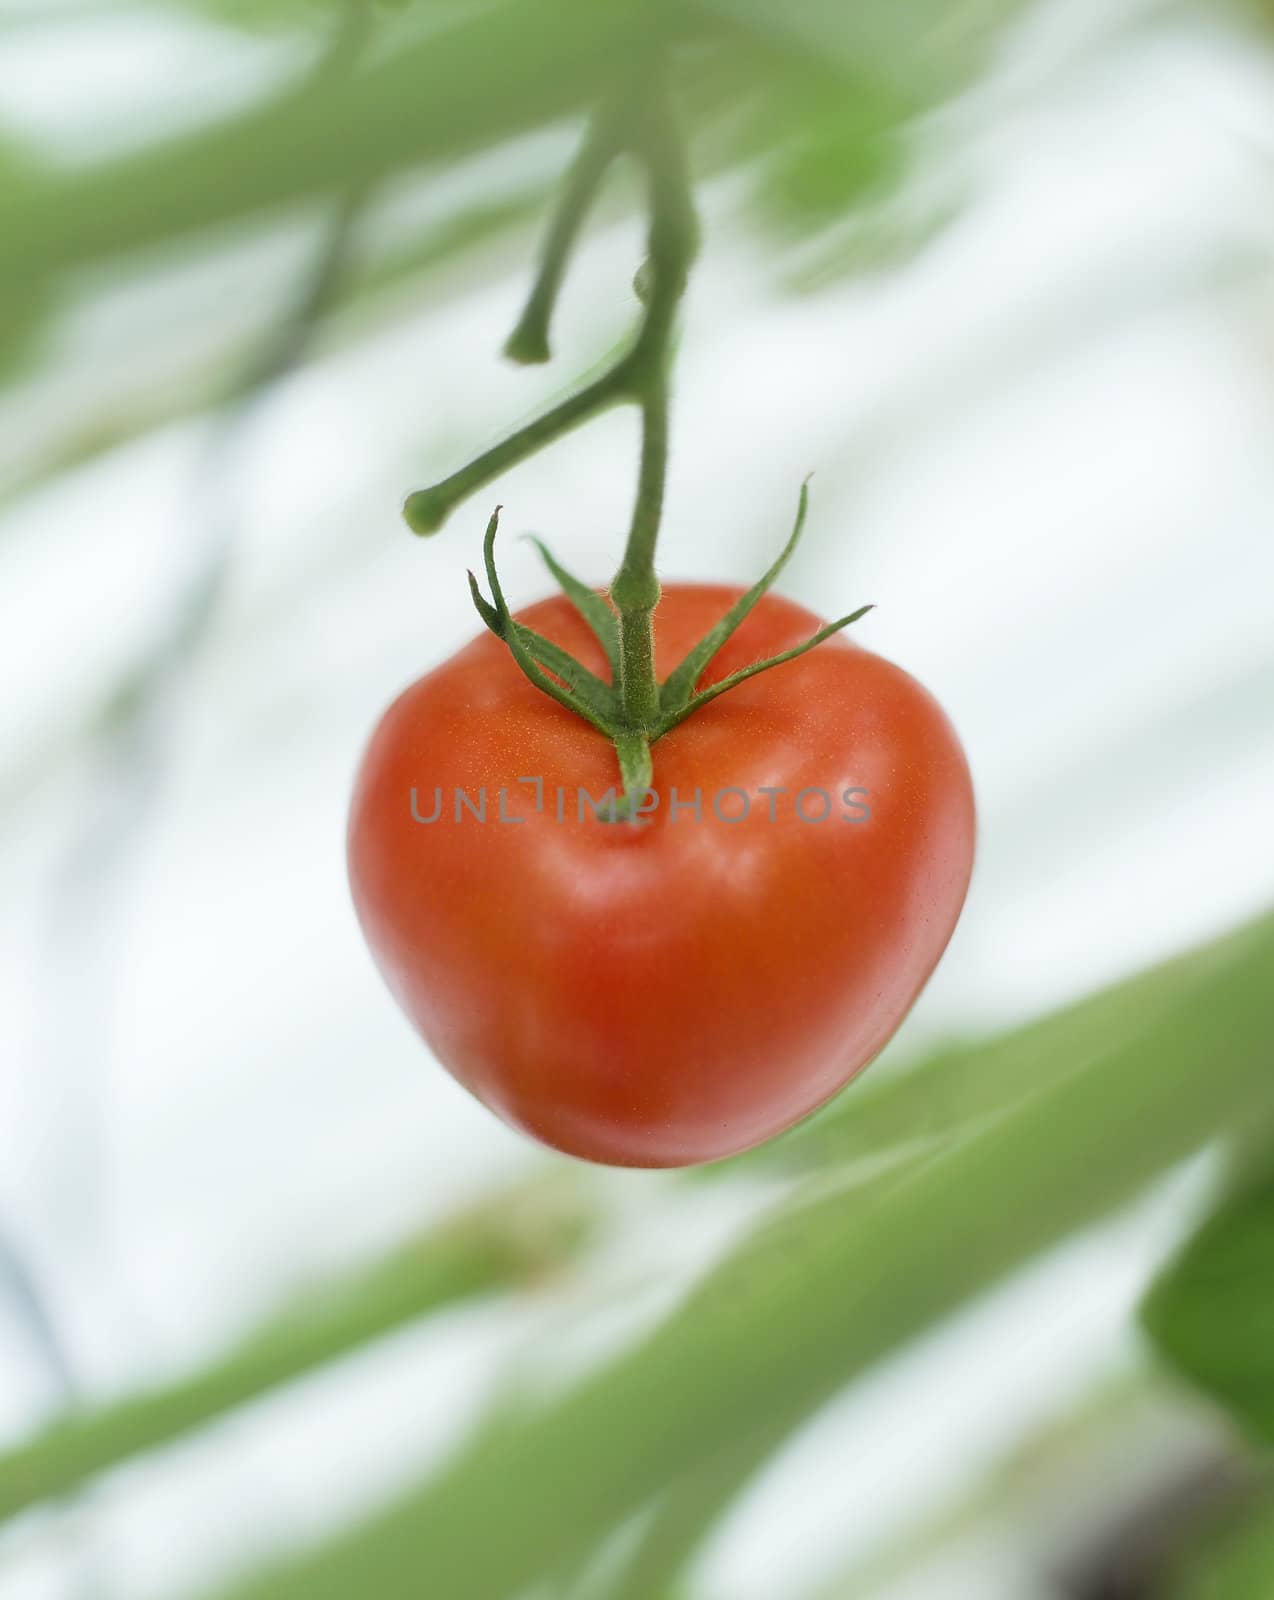 Close up of a single tomato